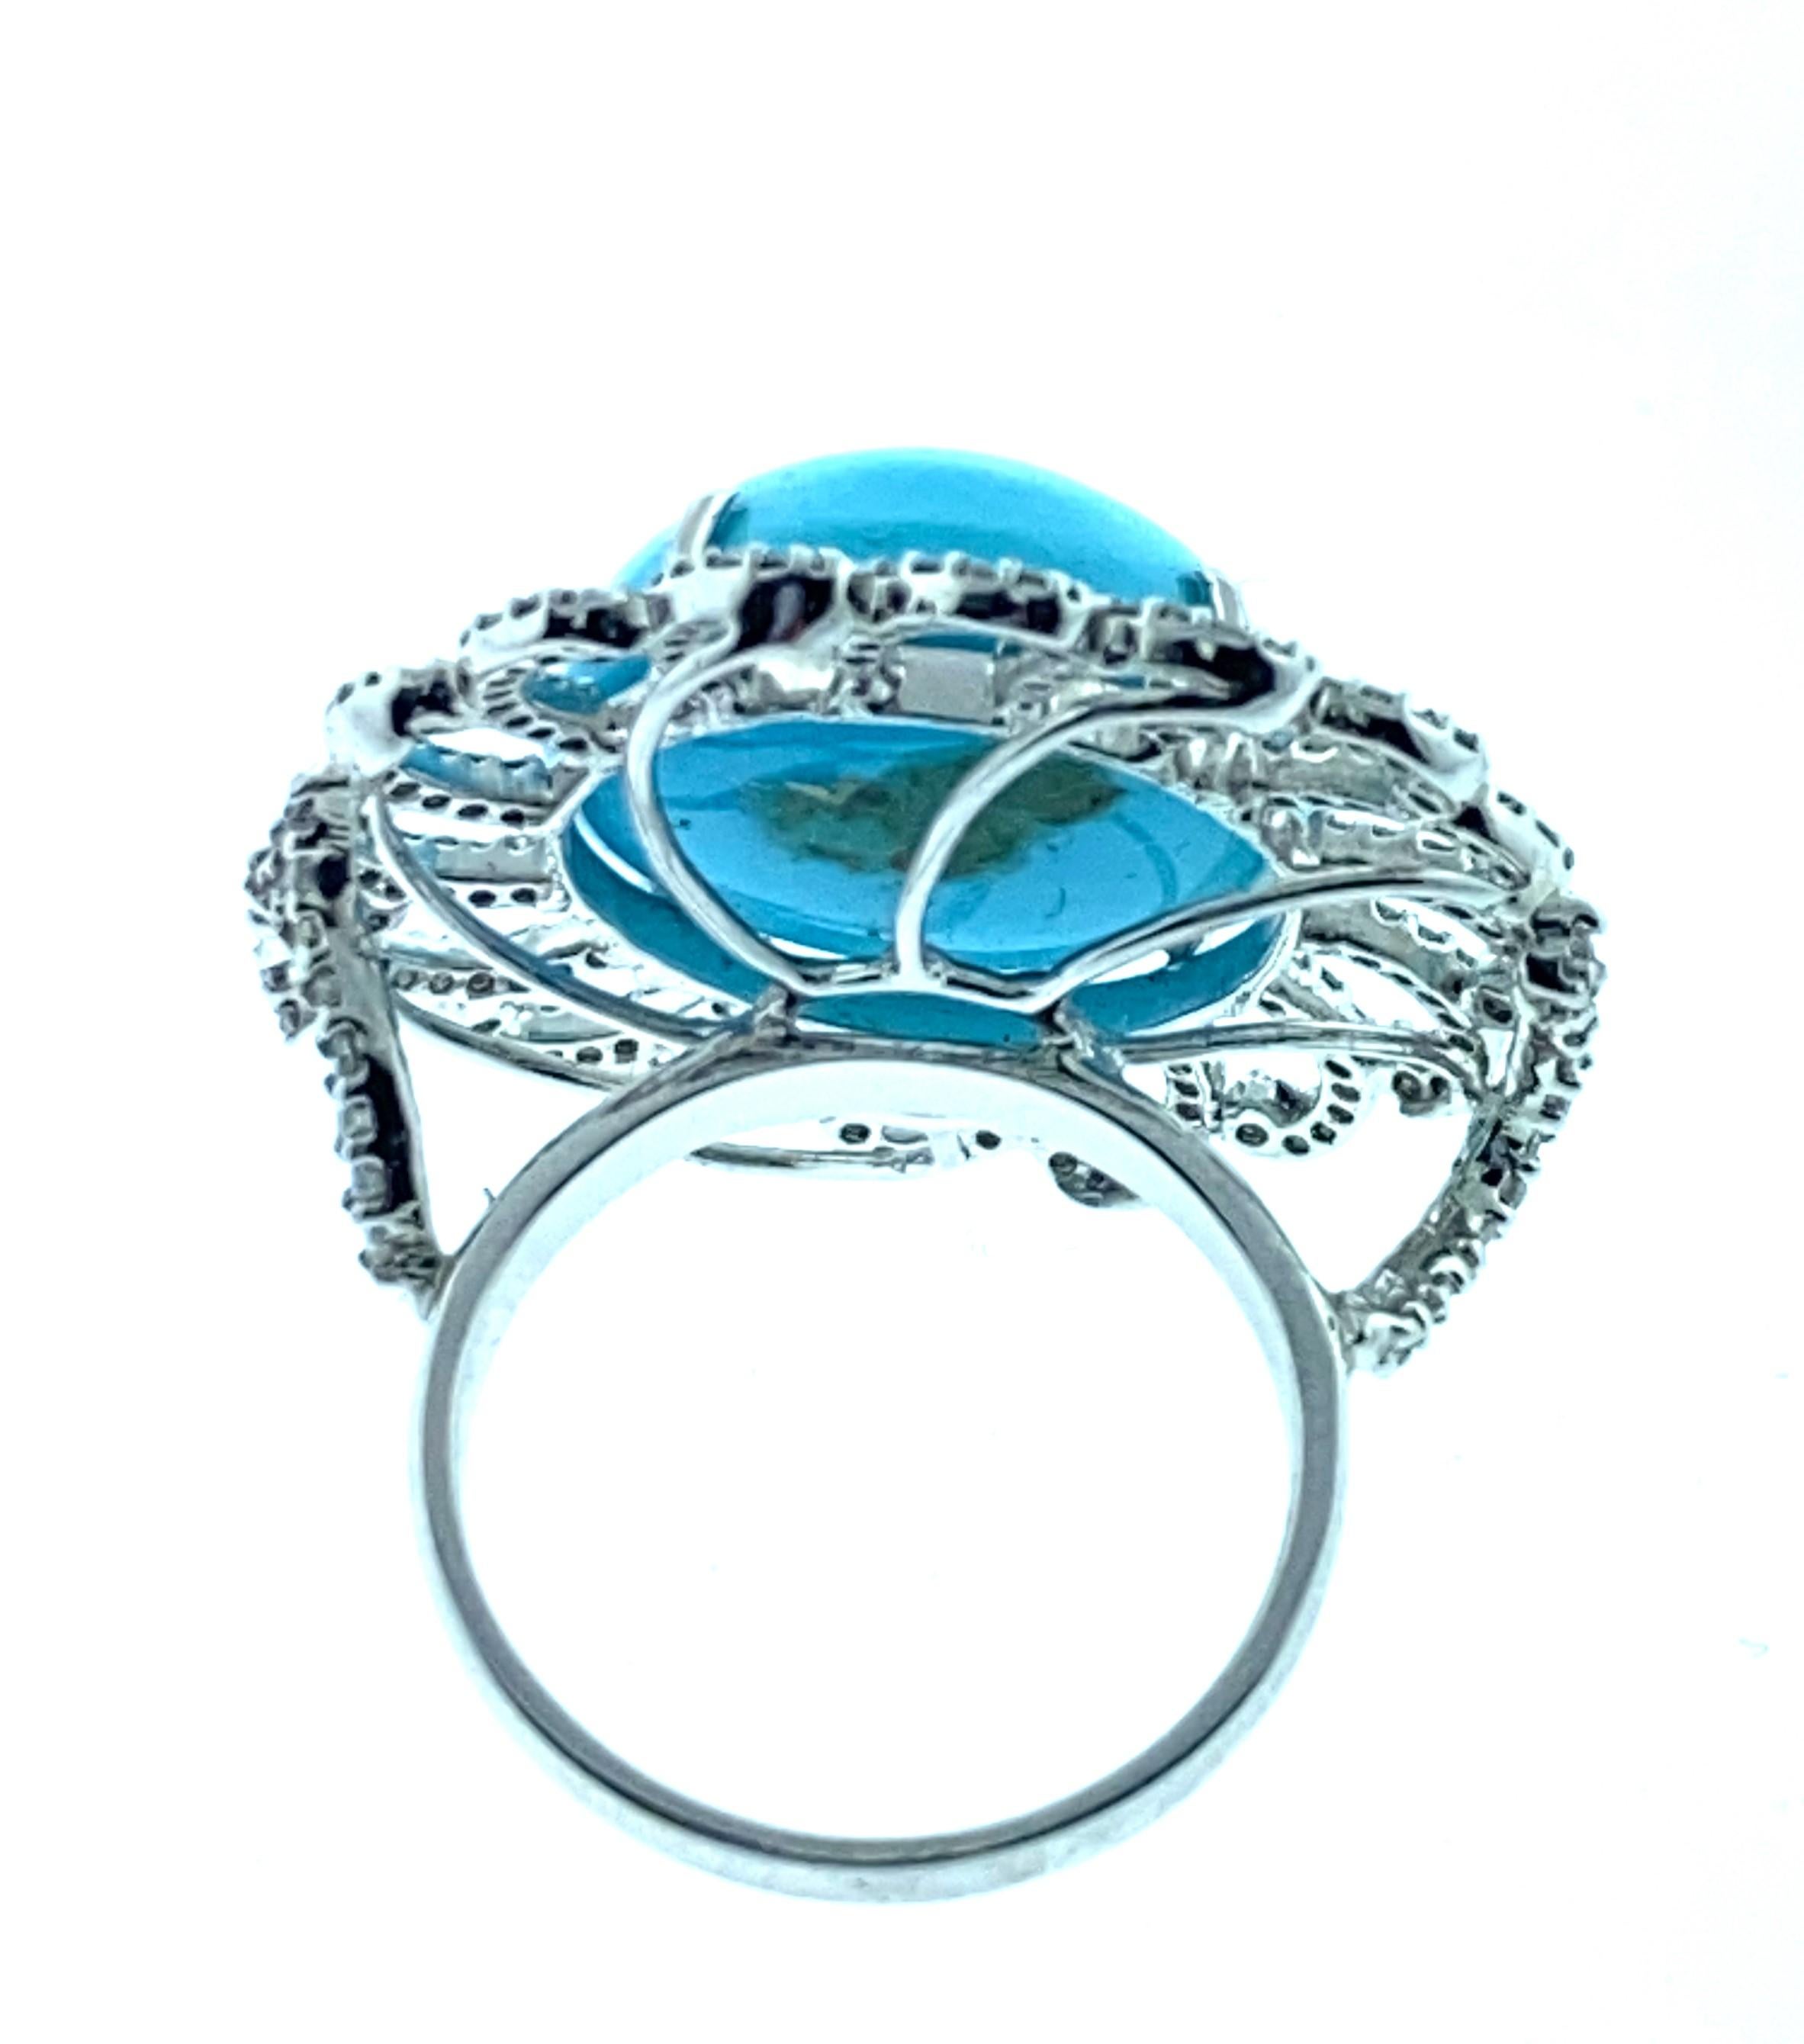 Round Cut 22.56 Carat Turquoise, 1.12 Carat Diamond Ring in 18 Karat White Gold For Sale